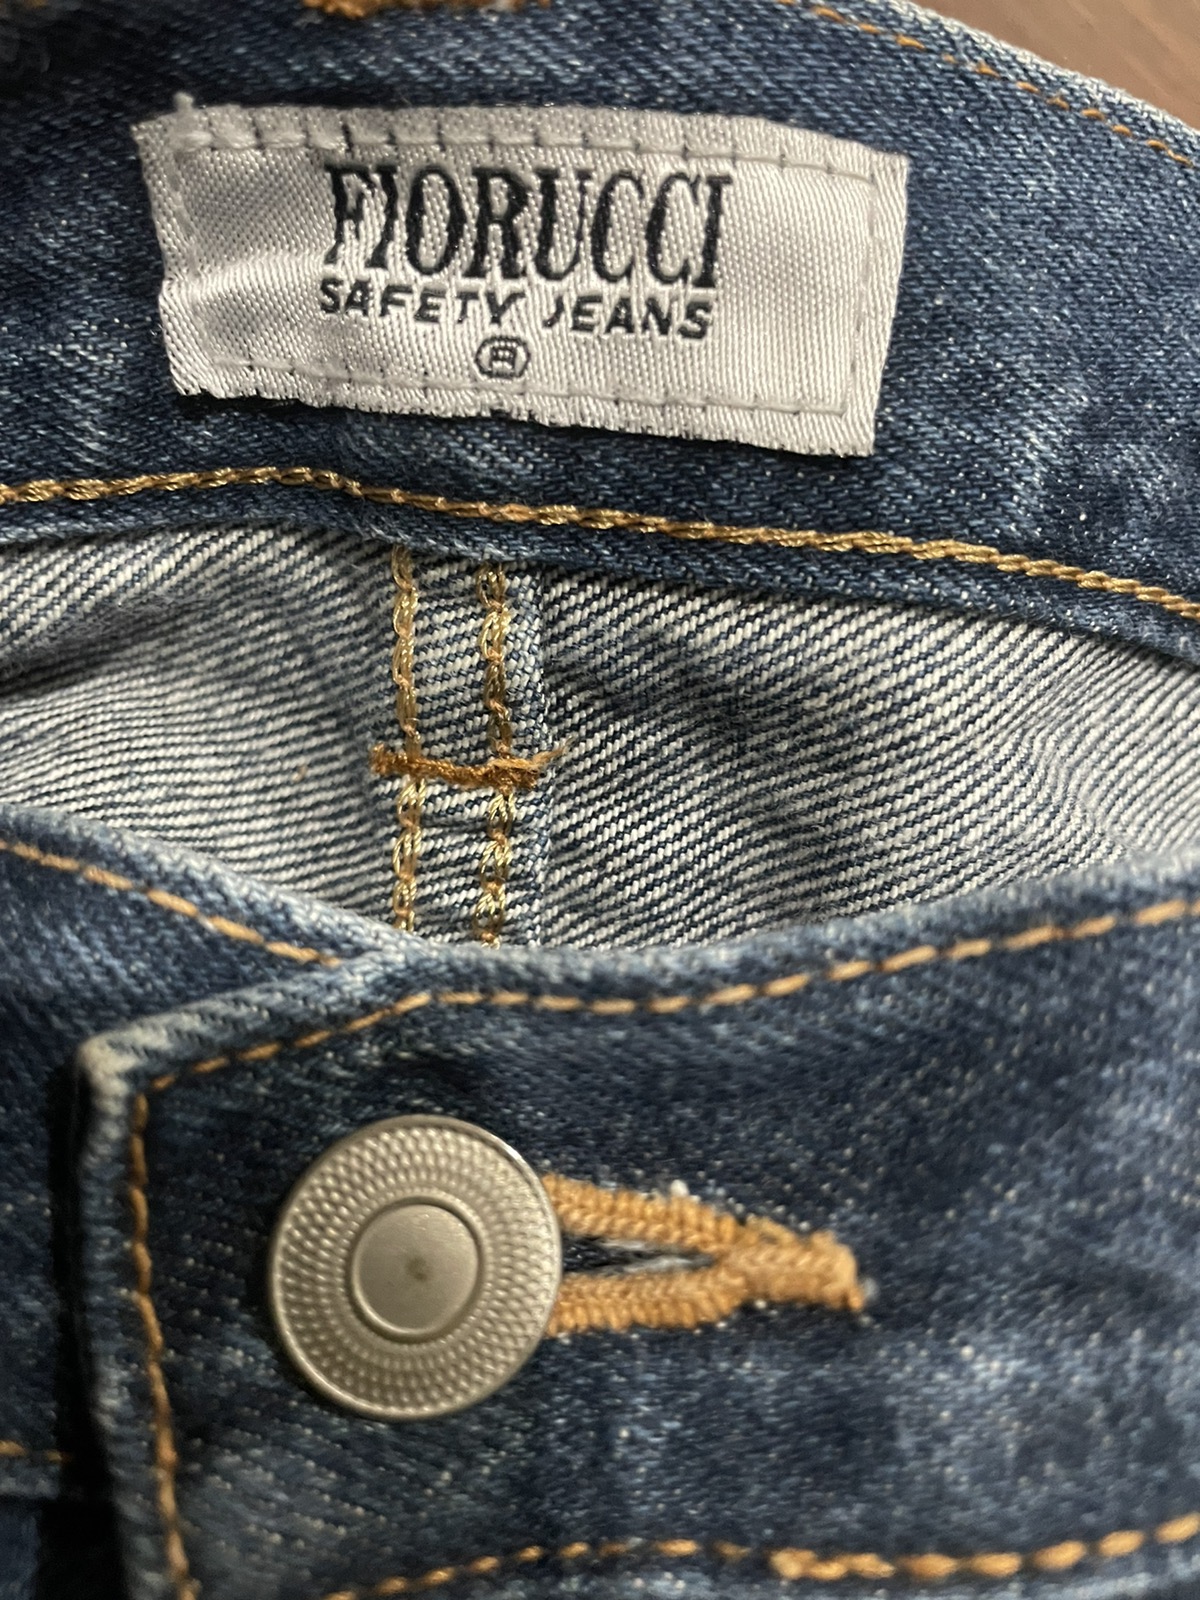 Fiorucci Carpenter Denim Jeans